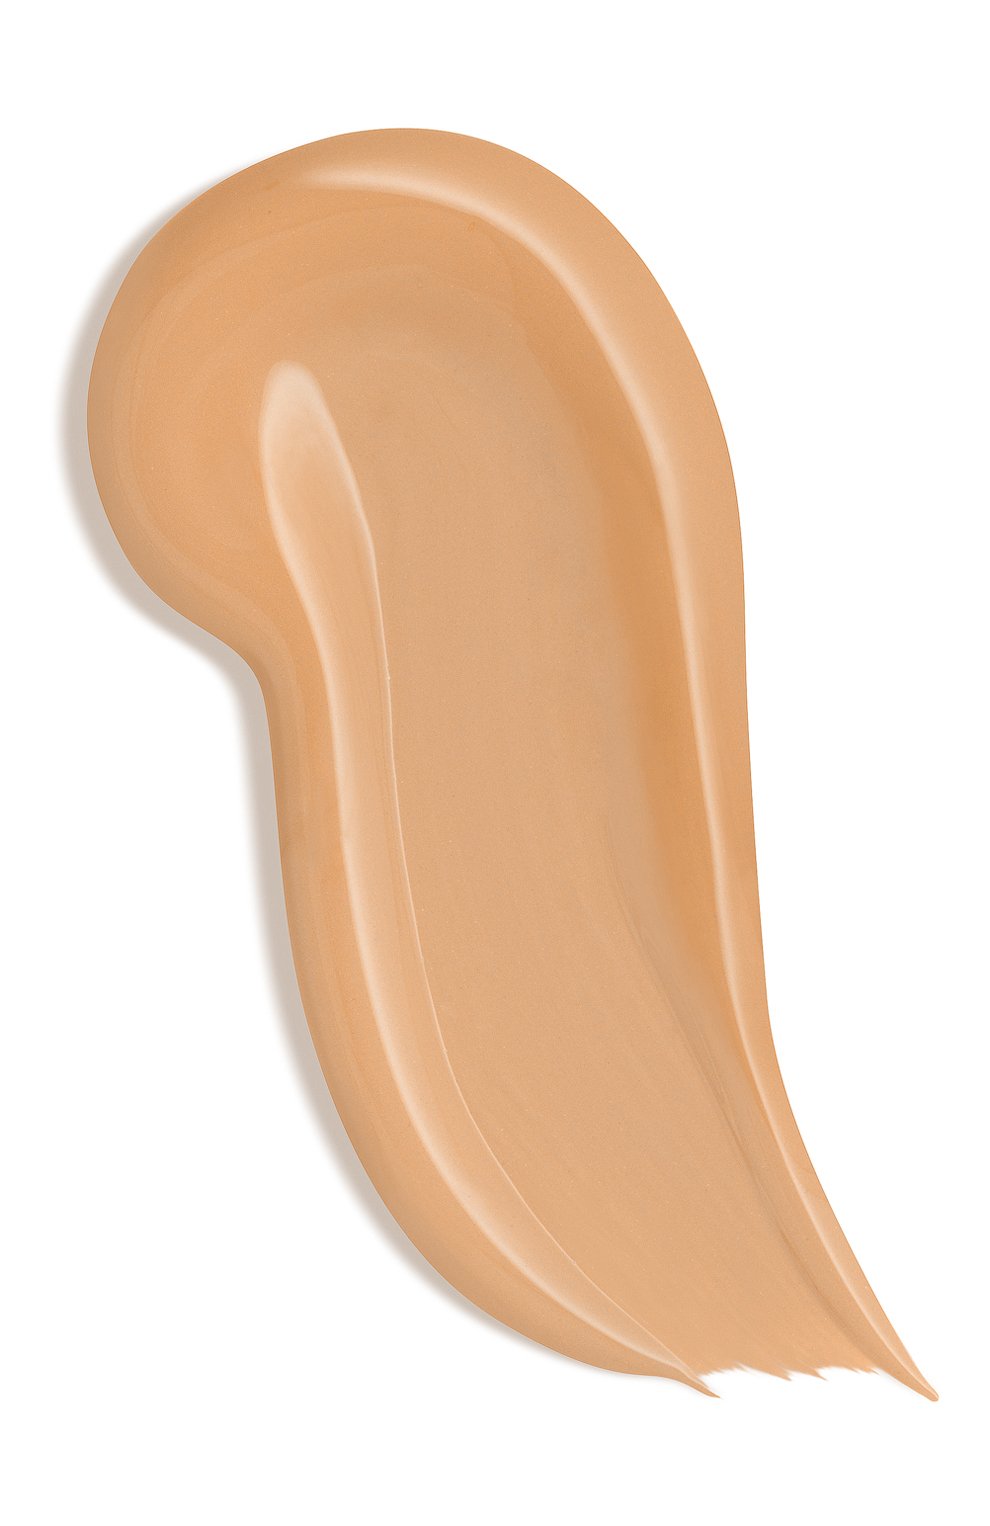 Тональный крем для лица с лифтинг эффектом, 70 caramel (25ml) RODIAL  цвета, арт. 5060027069751 | Фото 2 (Обьем косметики: 2x500+250+100ml)